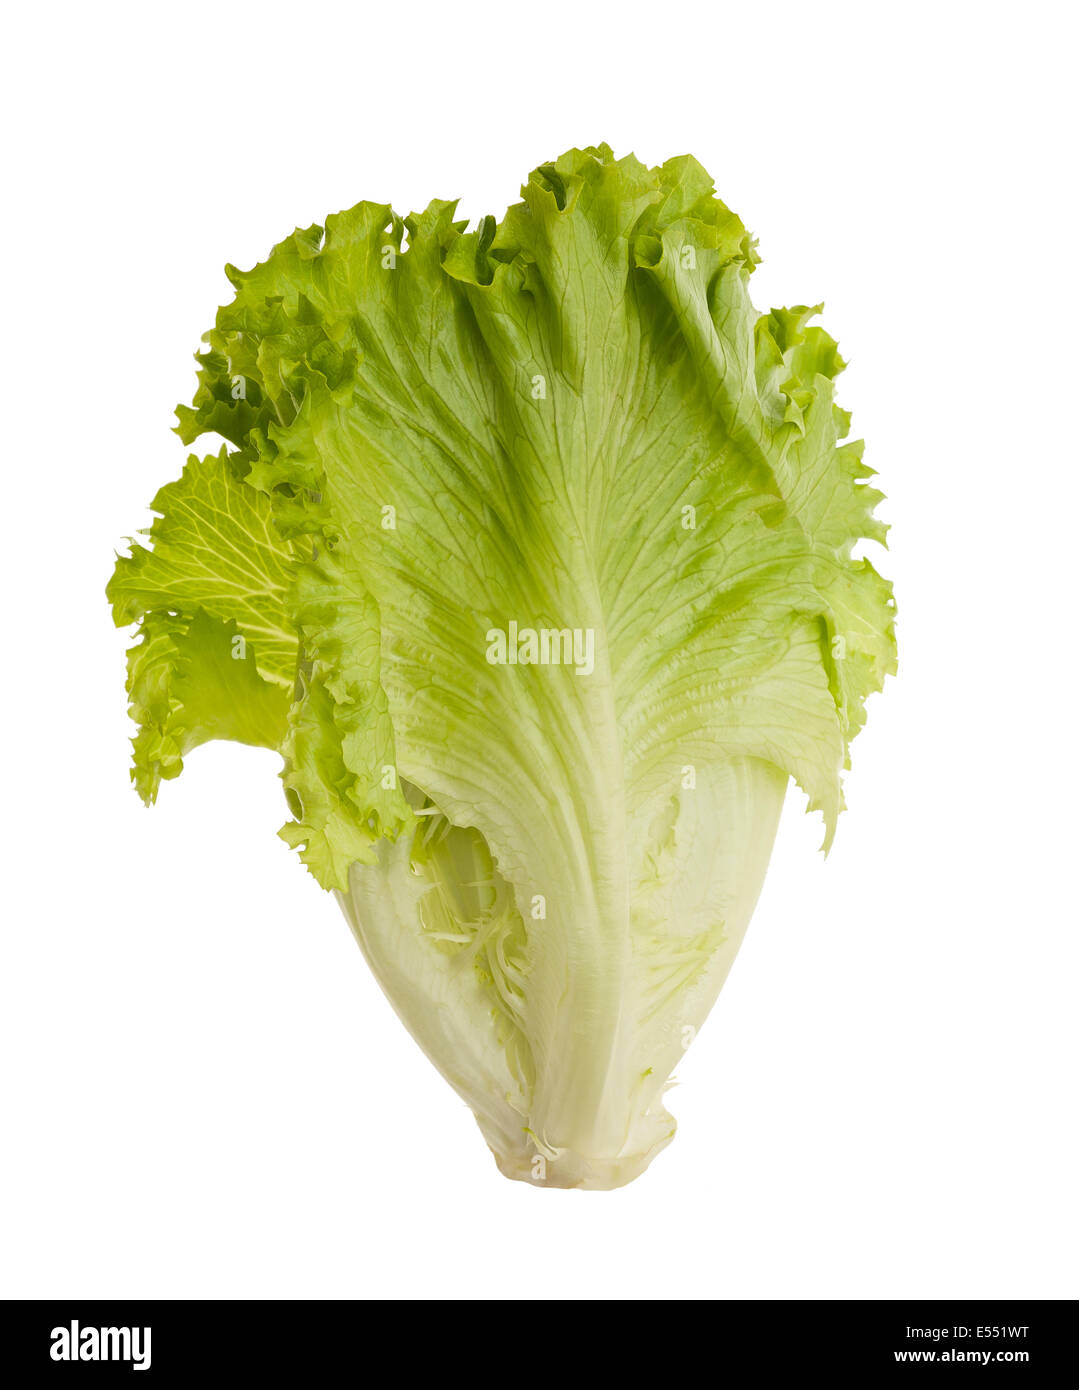 Salat tuft isolierten auf weißen Hintergrund. Salat-Blätter Stockfoto